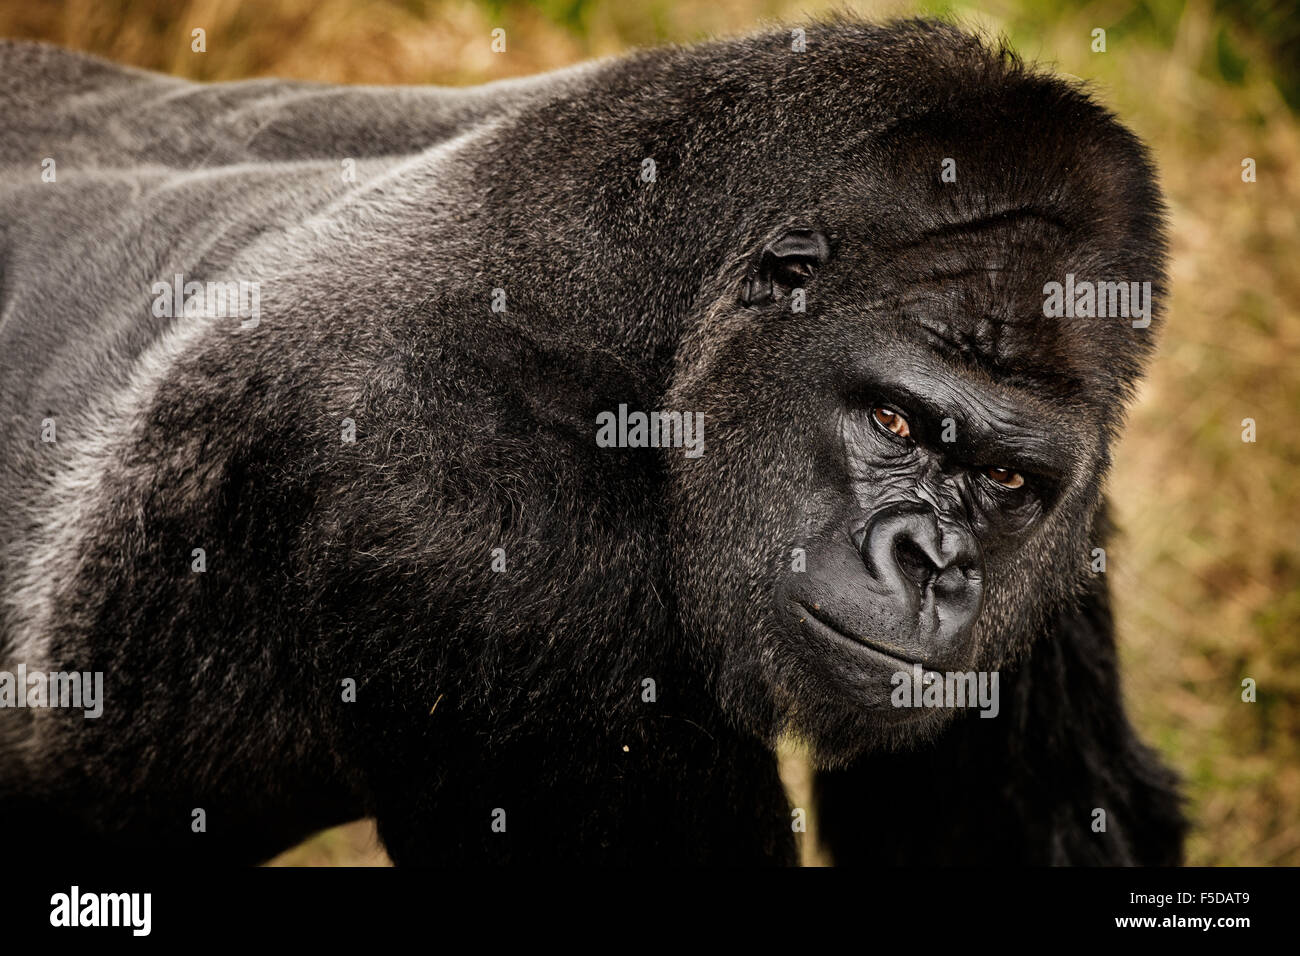 A gorilla staring into the camera Stock Photo